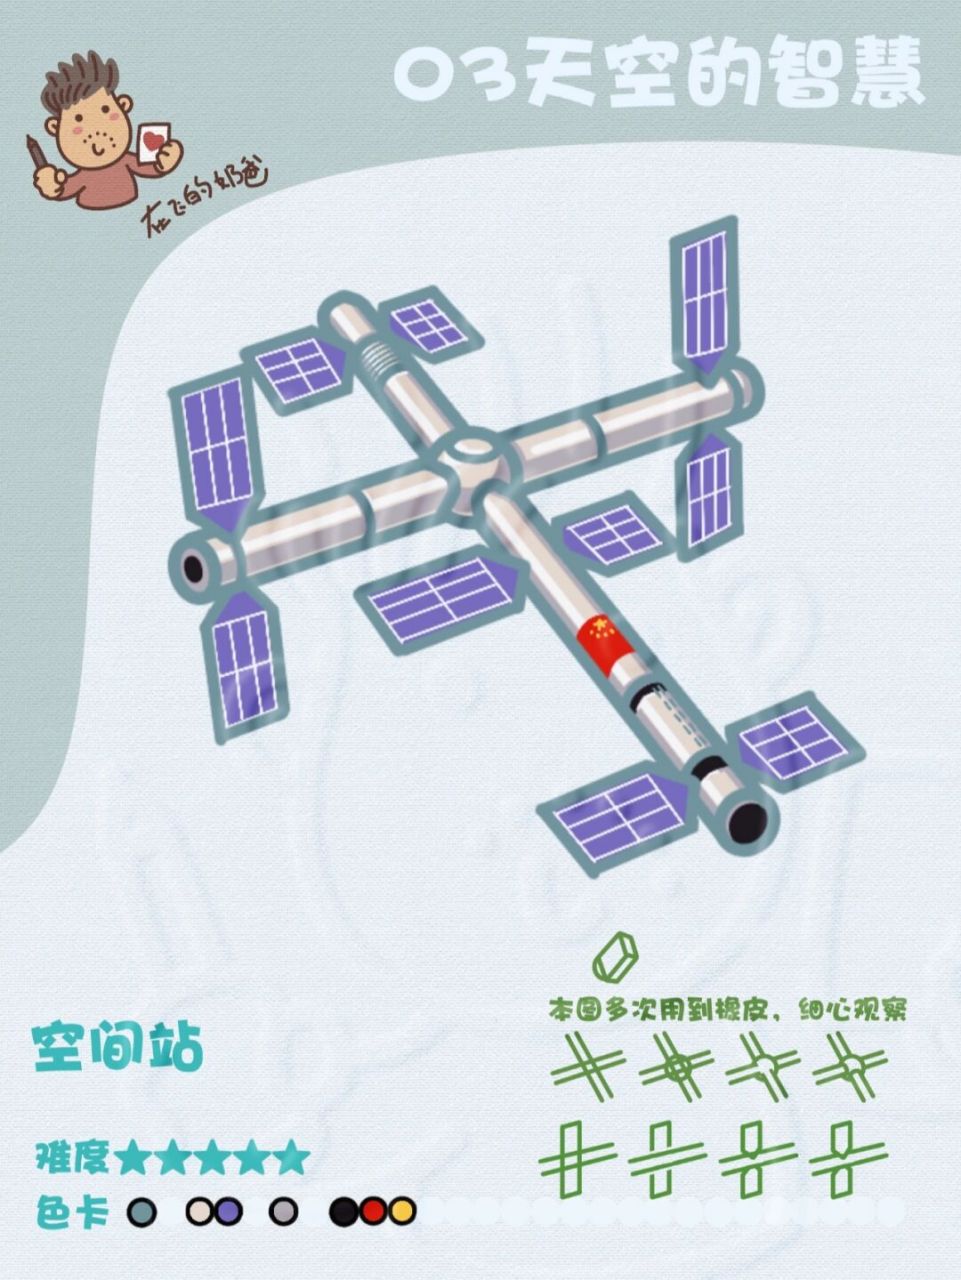 中国航天空间站简笔画图片